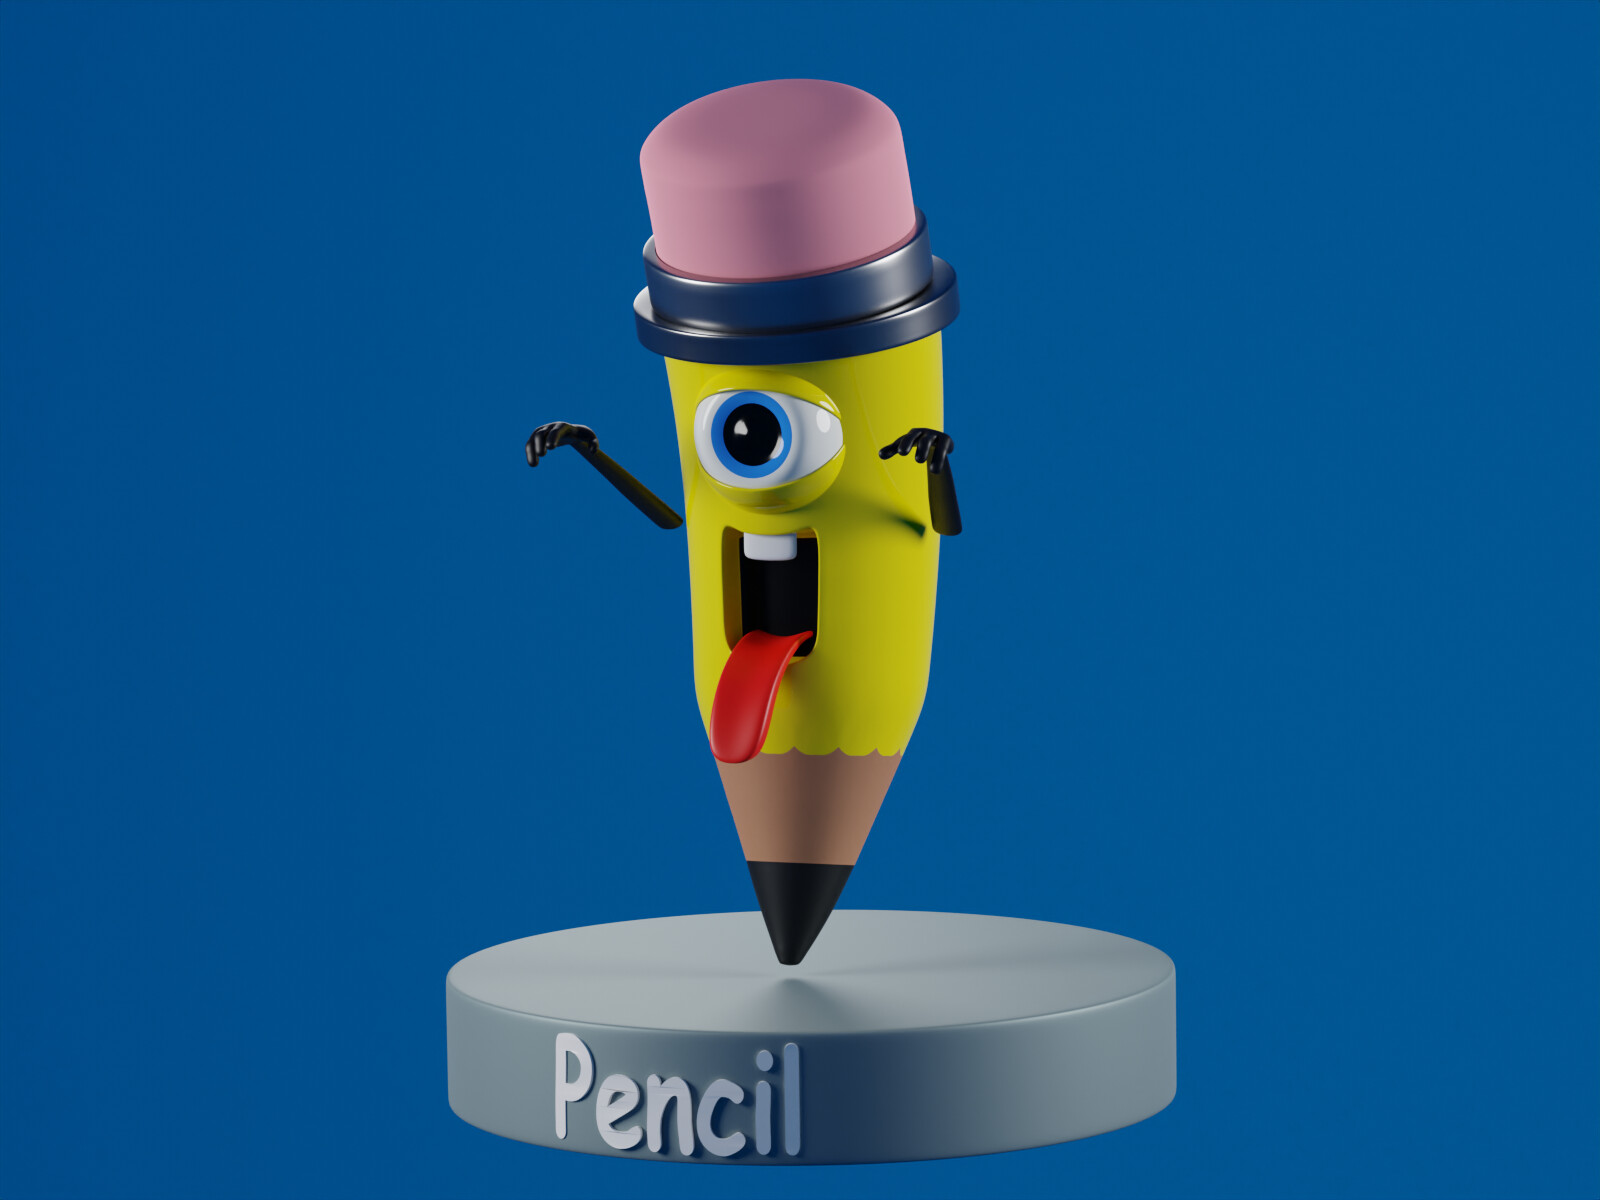 ArtStation - Pencil